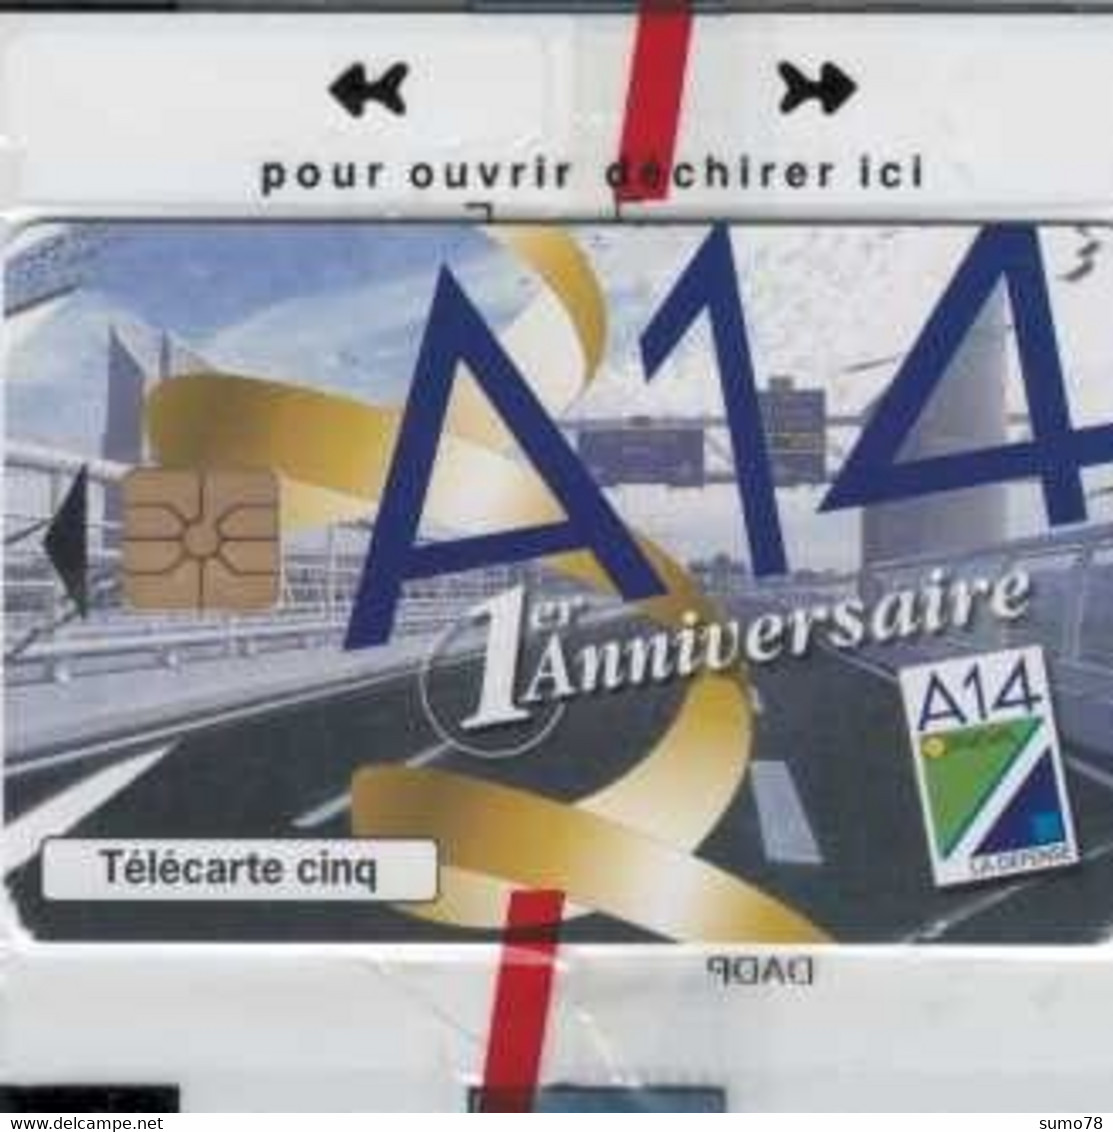 SNAP - A14 - AUTOROUTE - DEC 97 - 5 Unités - France - VOITURE - CAR - AUTO - AUTOMOBILE - Non Classés